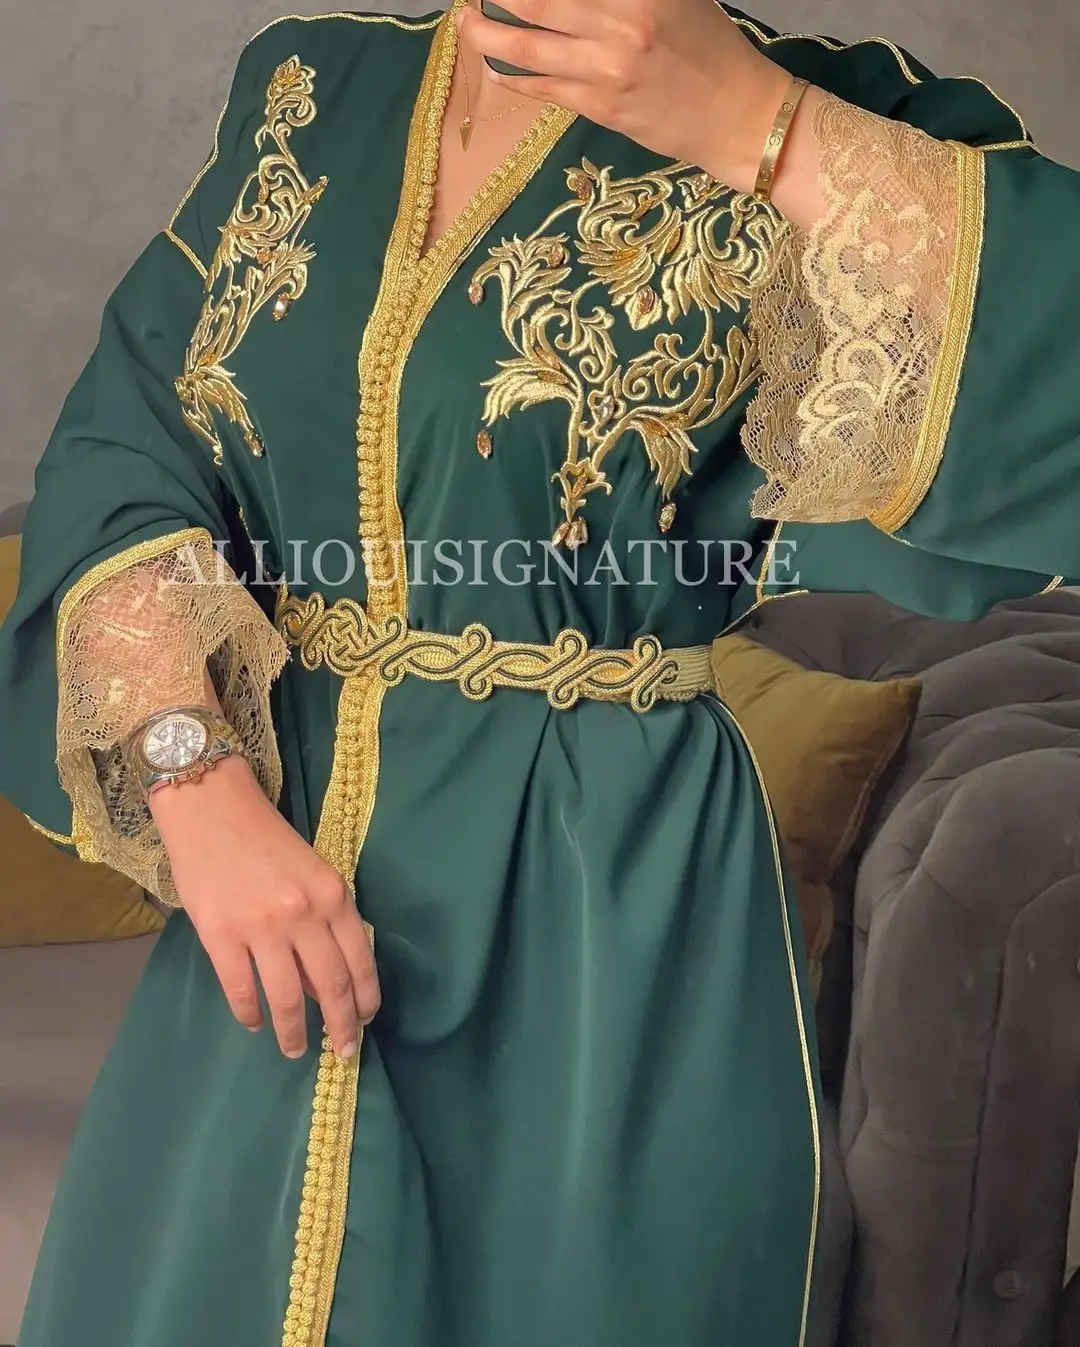 قفطان مغربي ذهبي من الساتان الأخضر والقفطان فستان عربي مع عمل يدوي جميل للغاية للفتيات المسلمات الاوروبيات بيع بالجملة